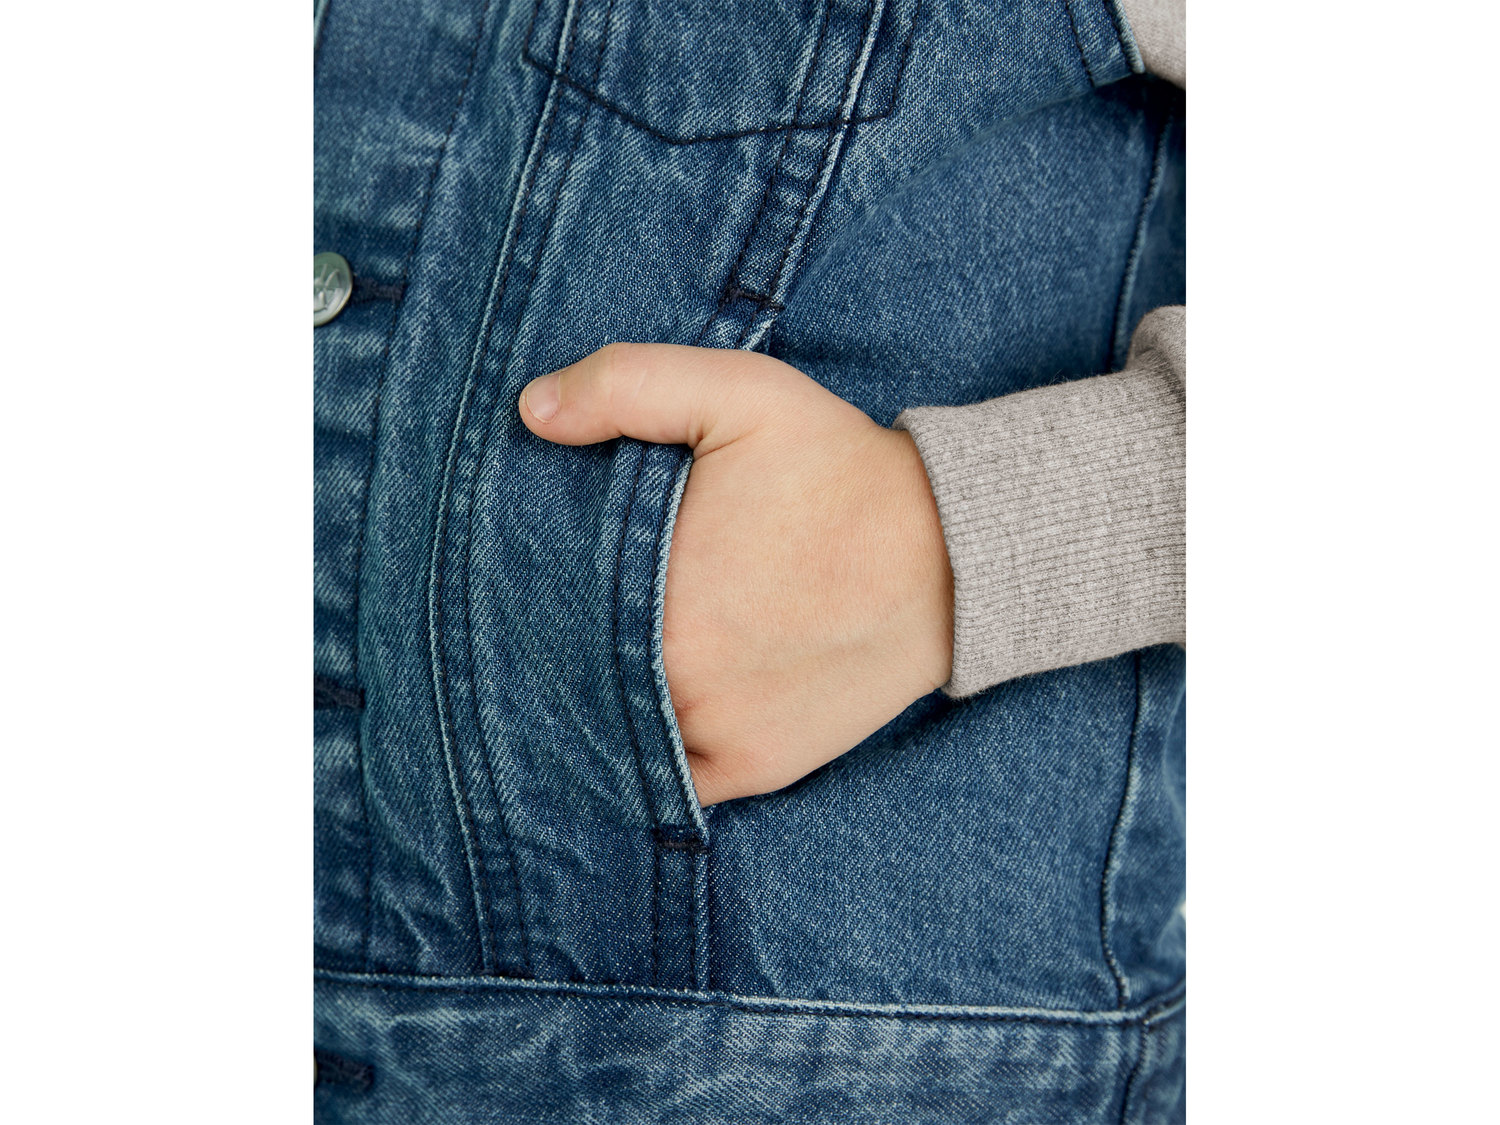 Kurtka jeansowa Lupilu, cena 34,99 PLN 
- rozmiary: 92-116
- Hohenstein bezpieczne ...